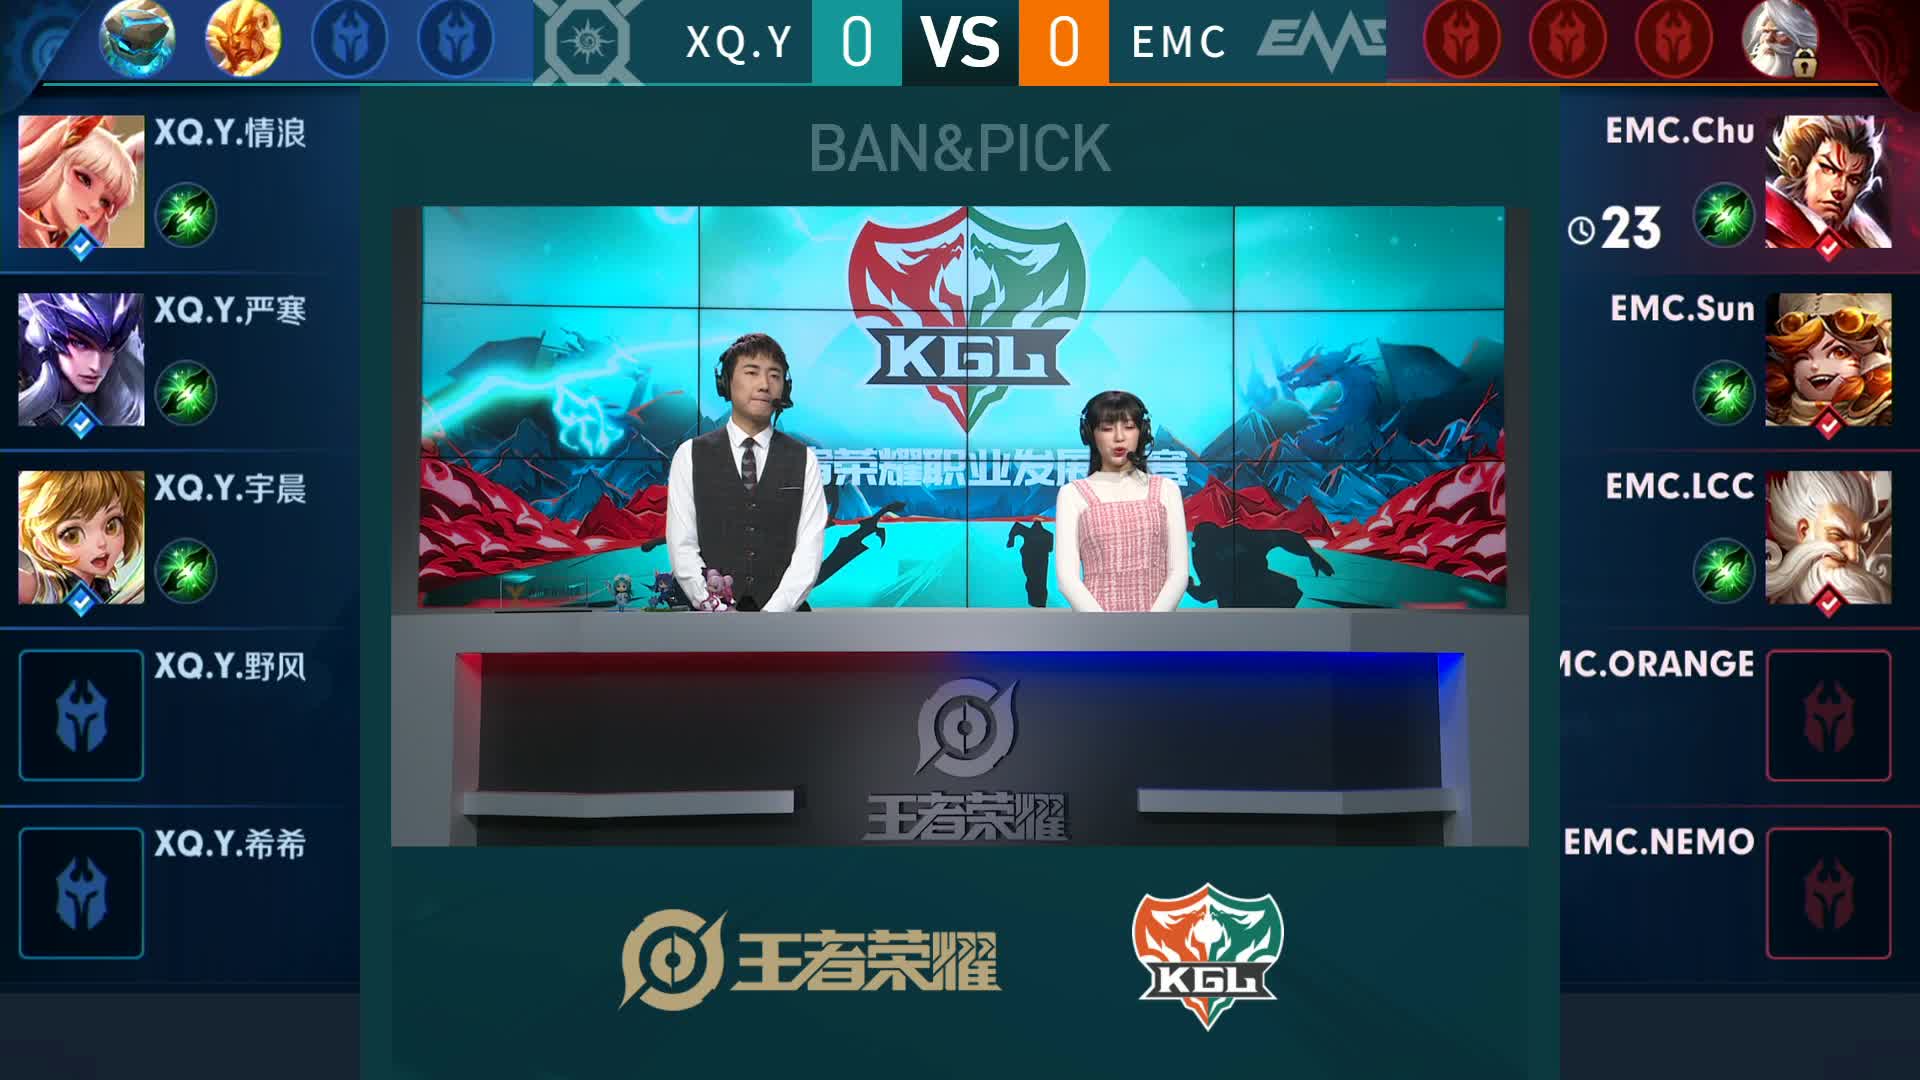 XQ.Y vs EMC KGL常规赛